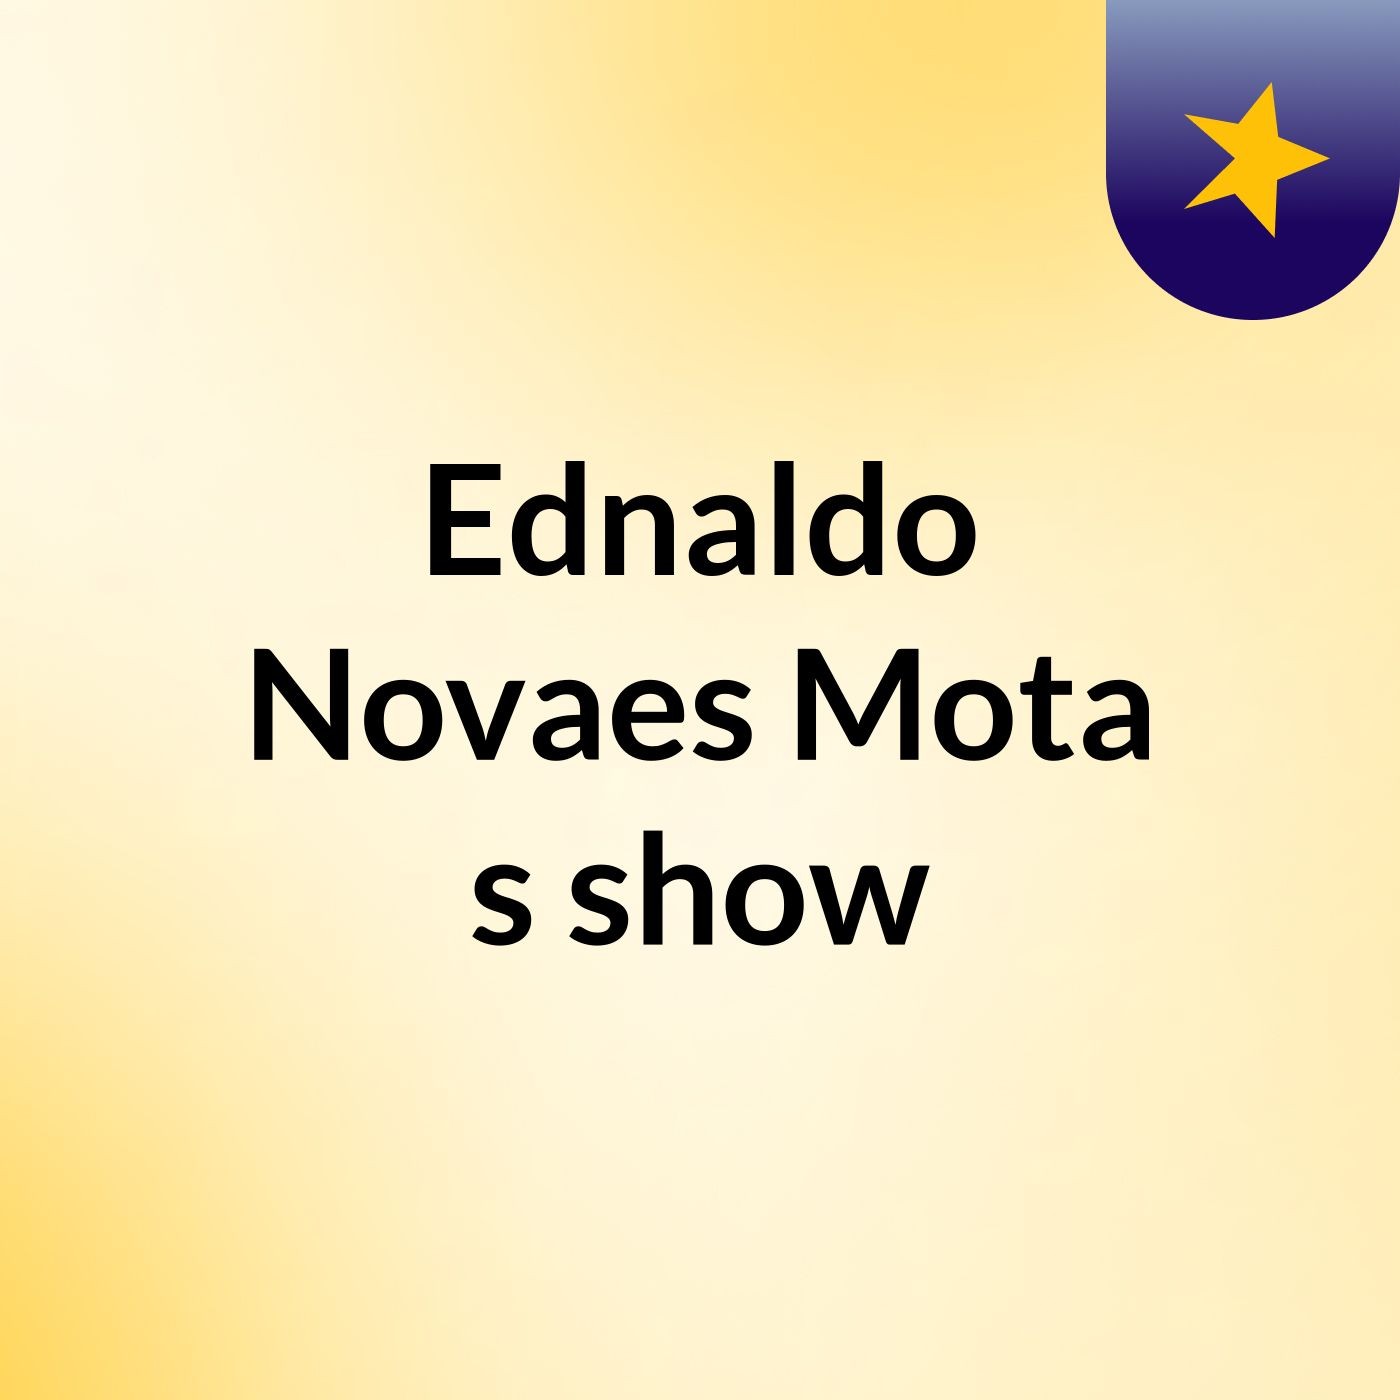 Ednaldo Novaes Mota's show